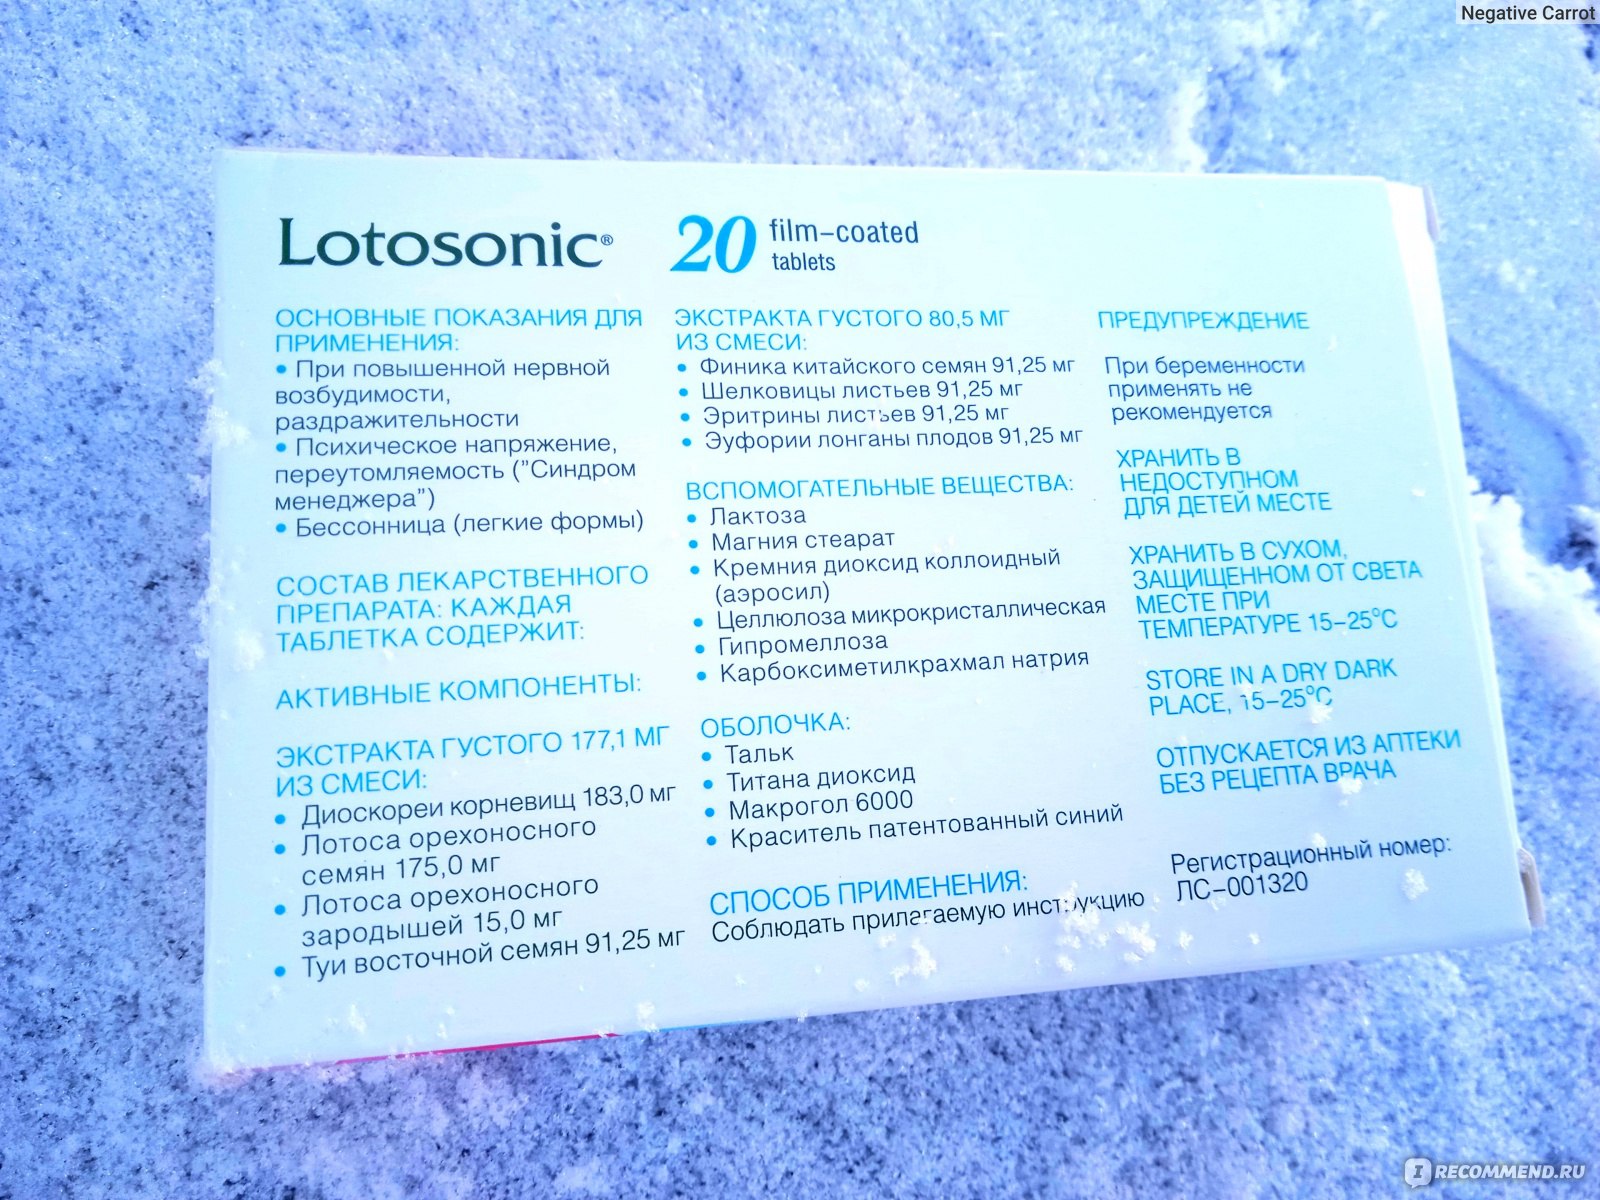 Снотворное Лотосоник (LOTOSONIC) - «Седативный препарат на основе .